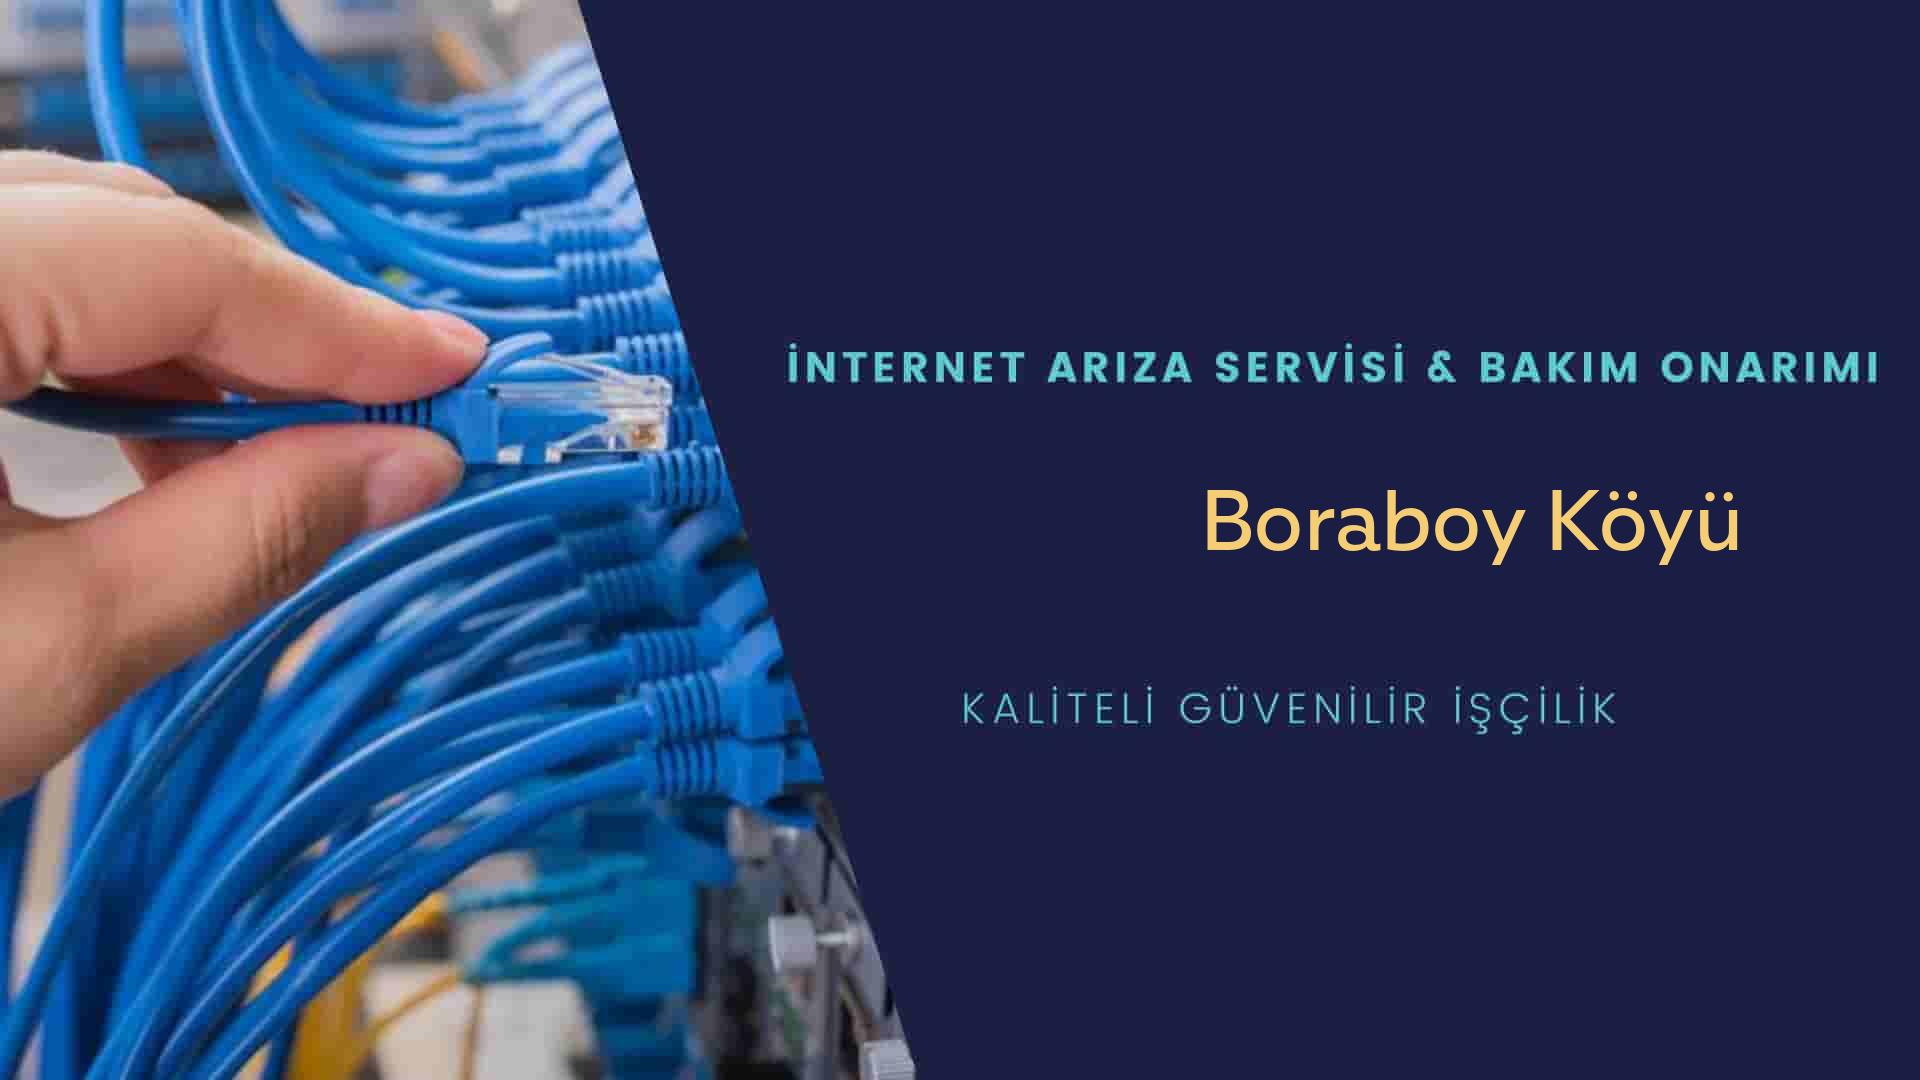 Boraboy Köyü internet kablosu çekimi yapan yerler veya elektrikçiler mi? arıyorsunuz doğru yerdesiniz o zaman sizlere 7/24 yardımcı olacak profesyonel ustalarımız bir telefon kadar yakındır size.